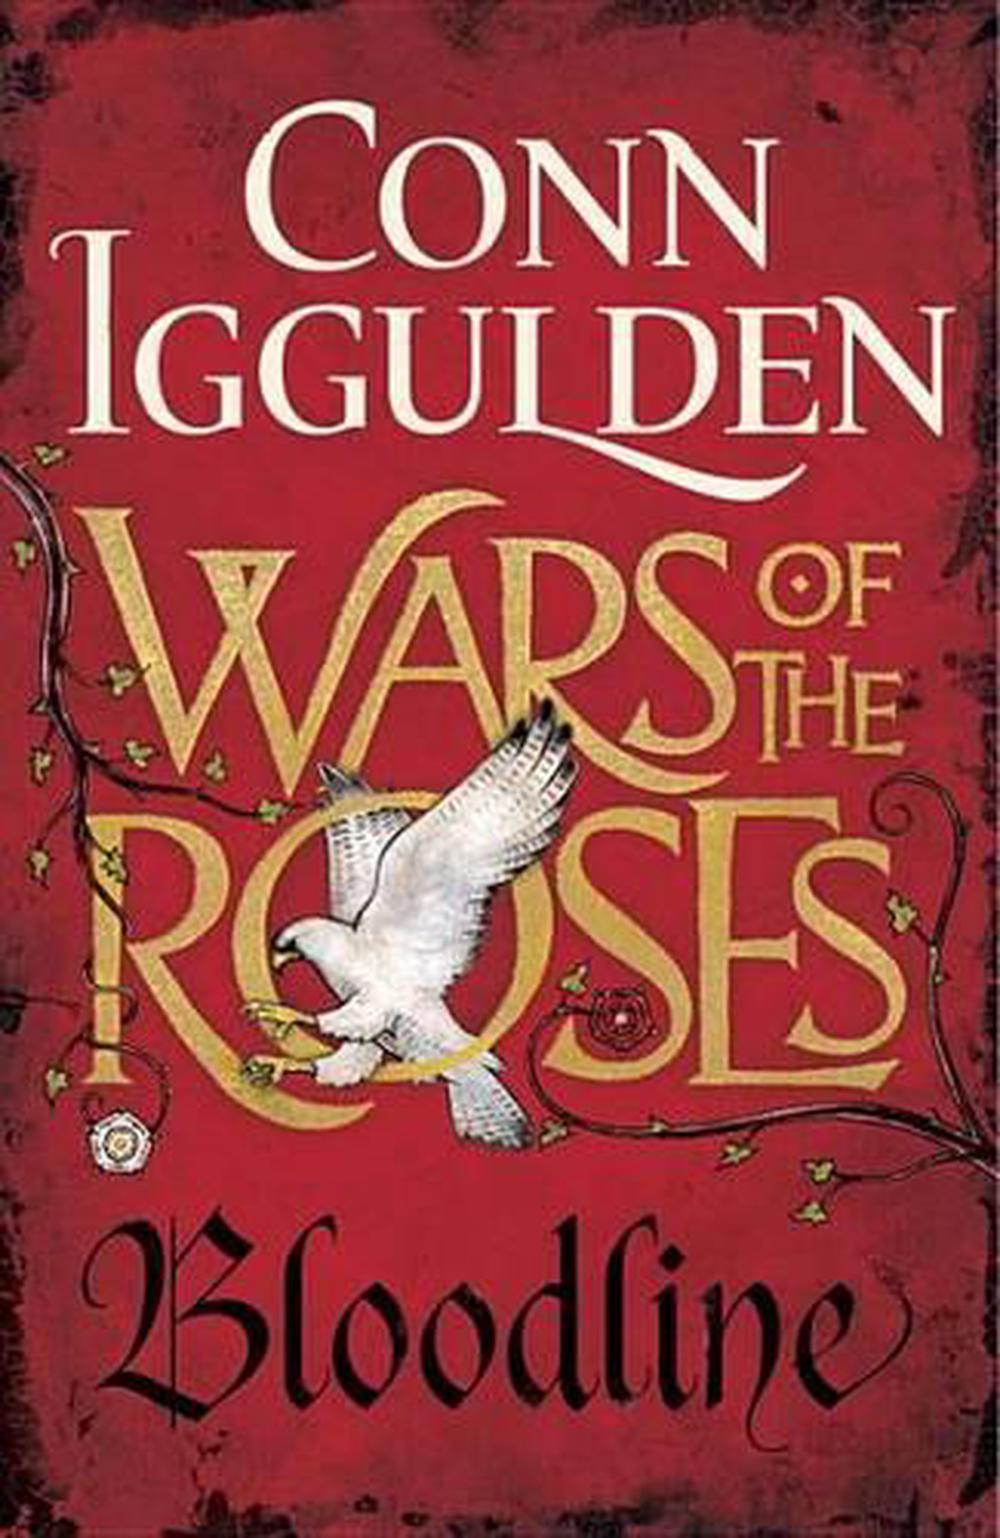 conn iggulden war of the roses download